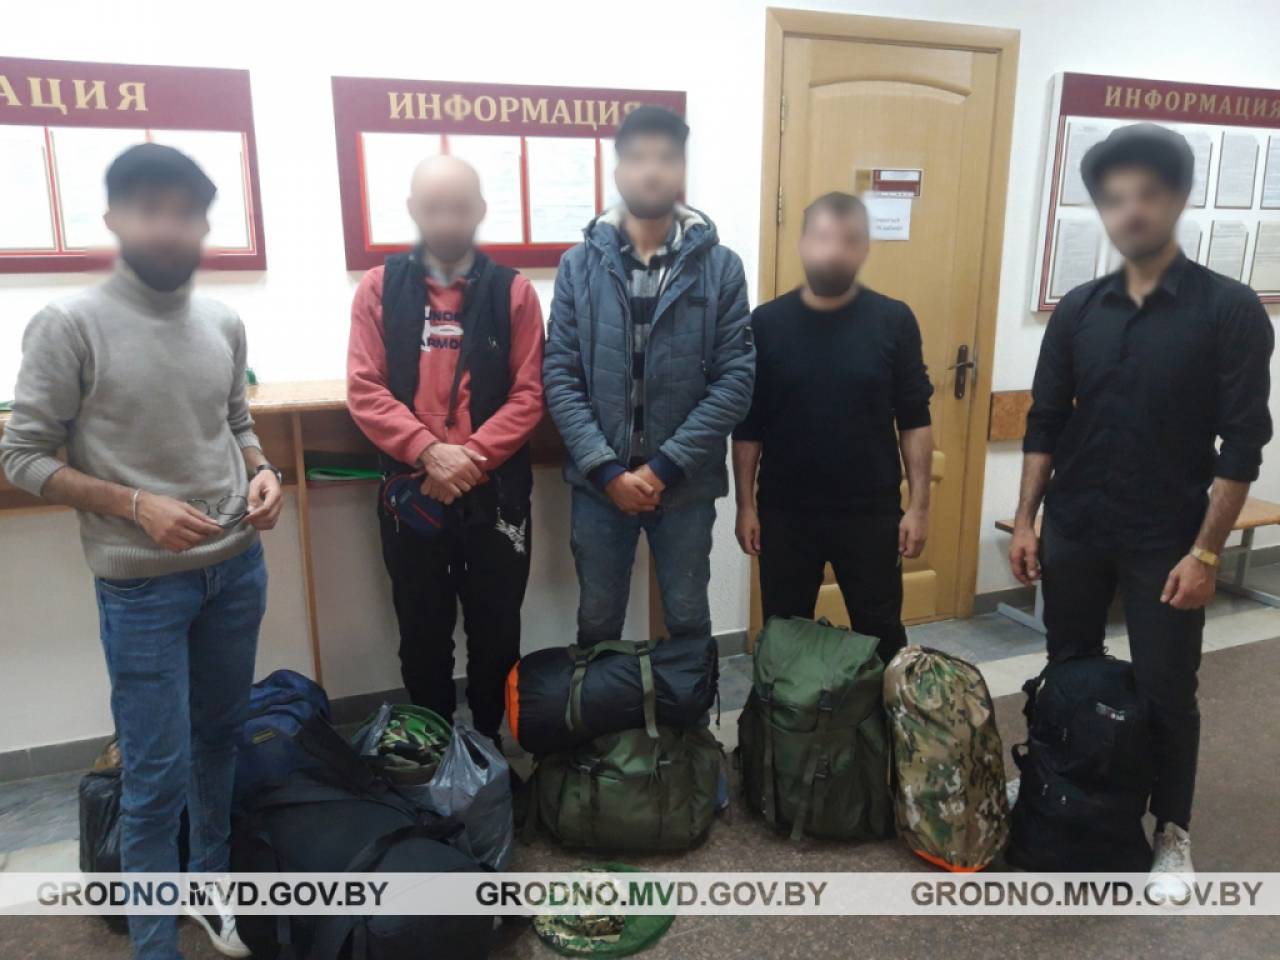 Жили у своих друзей, которые учатся в Гродно: милиция выявила 7 групп нелегальных мигрантов, которые хотели незаконно попасть в Европу, всех депортировали